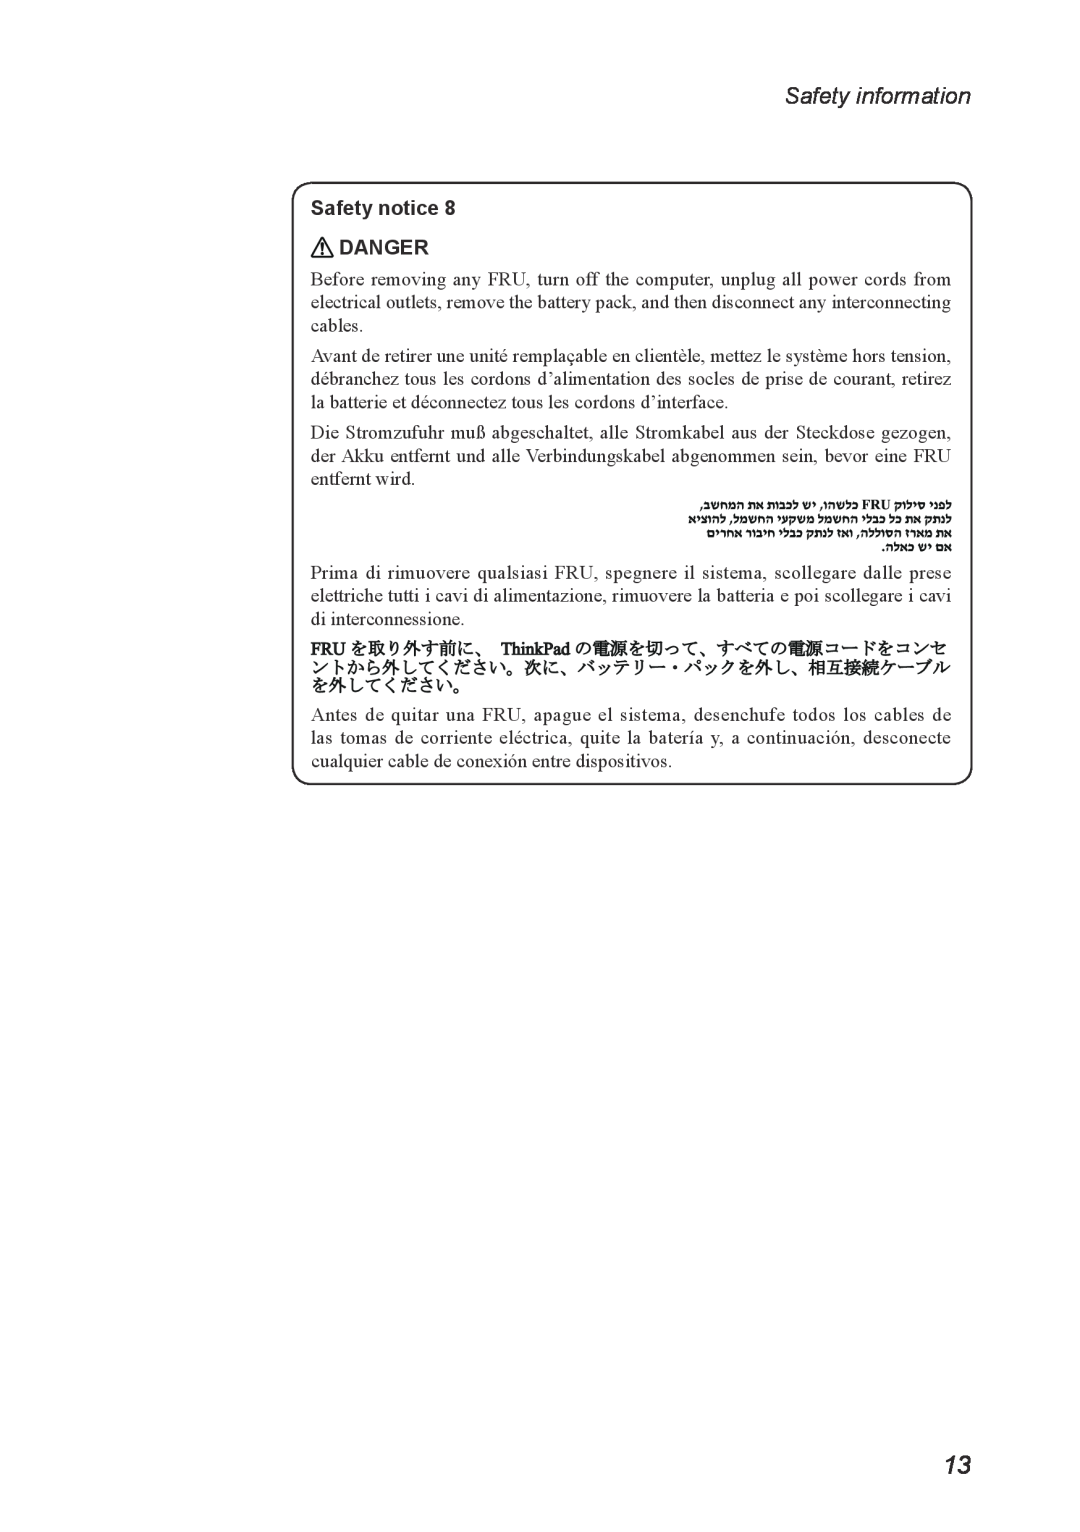 Lenovo Z560, Z565 manual Safety information, Safety notice DANGER 